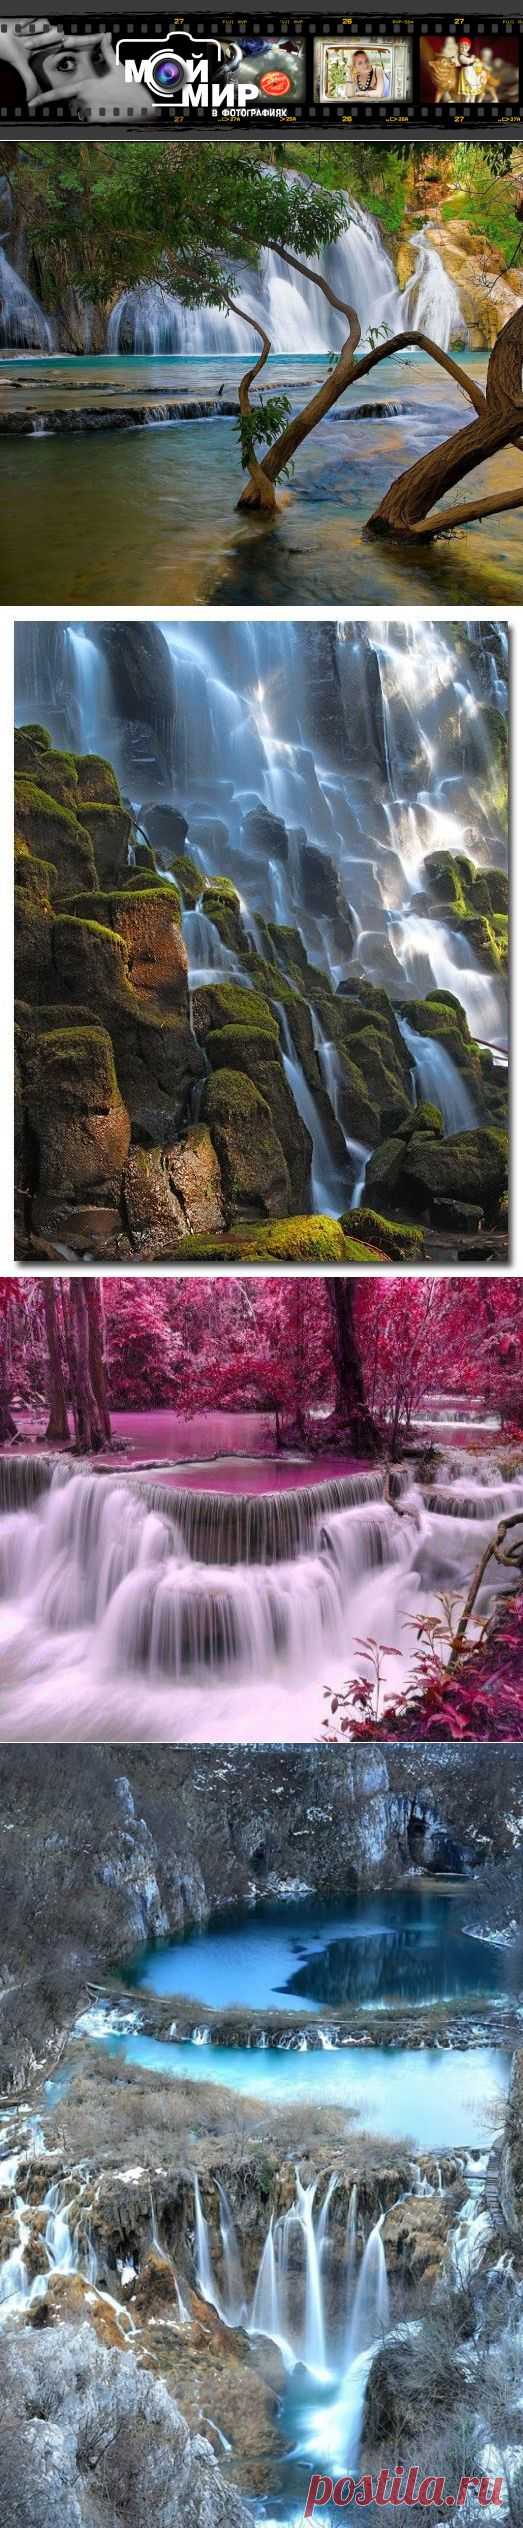 Красивые фото водопадов мира! | Мой мир в фотографиях